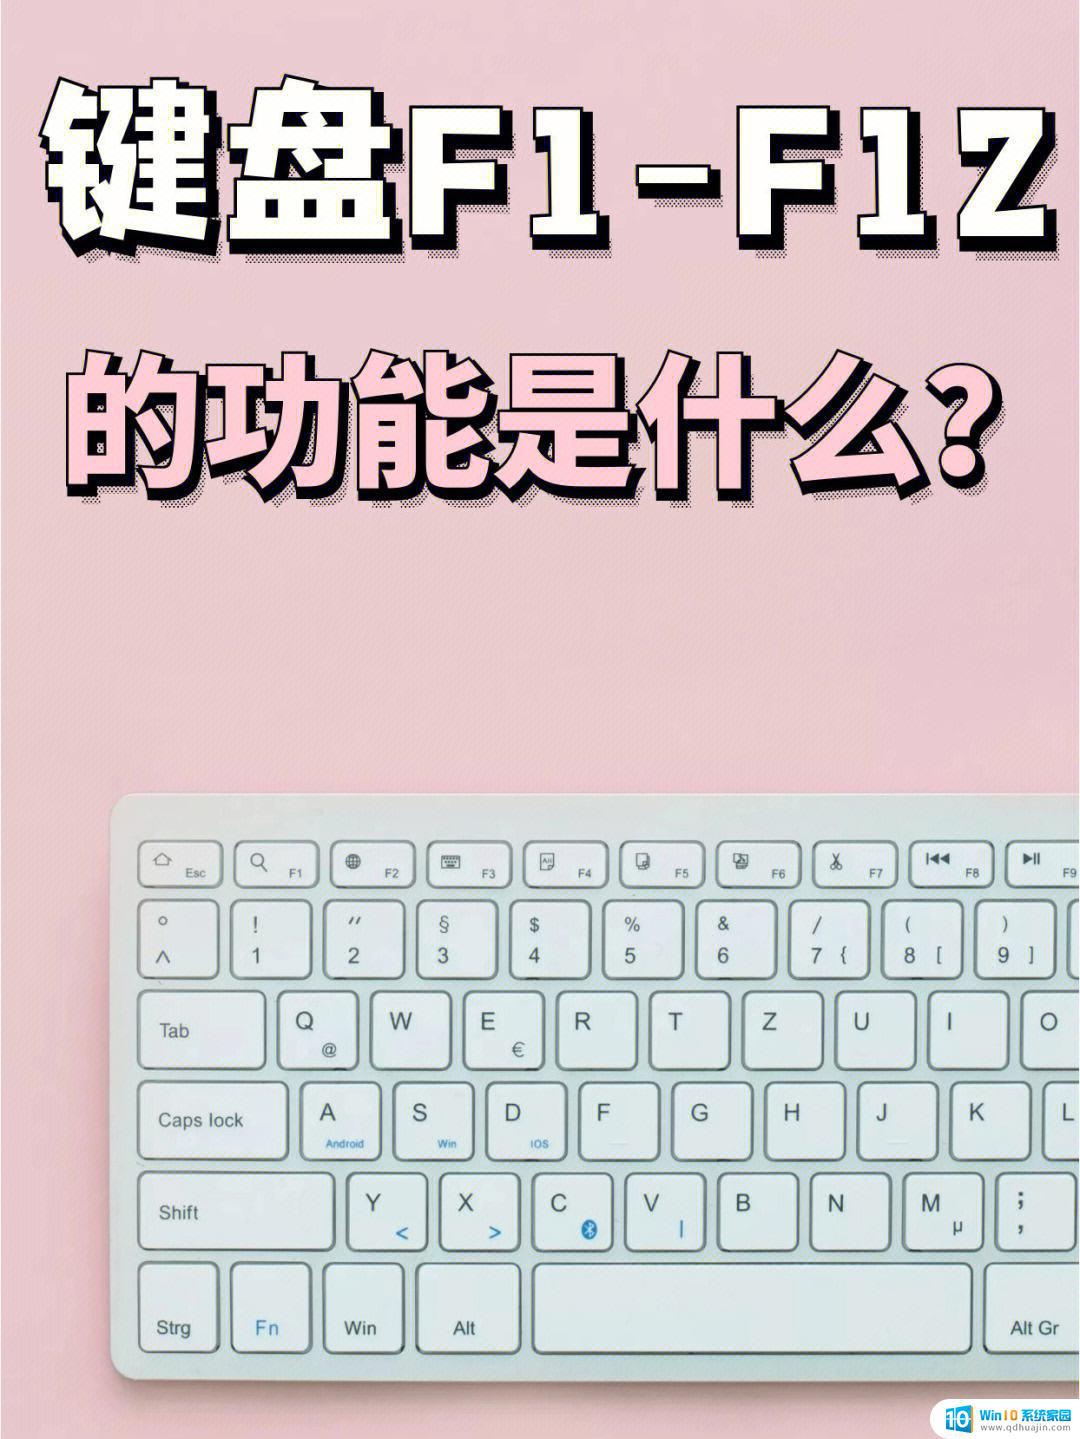 功能键f1一一f12各有什么功能 键盘快捷键F1到F12的作用分别是什么